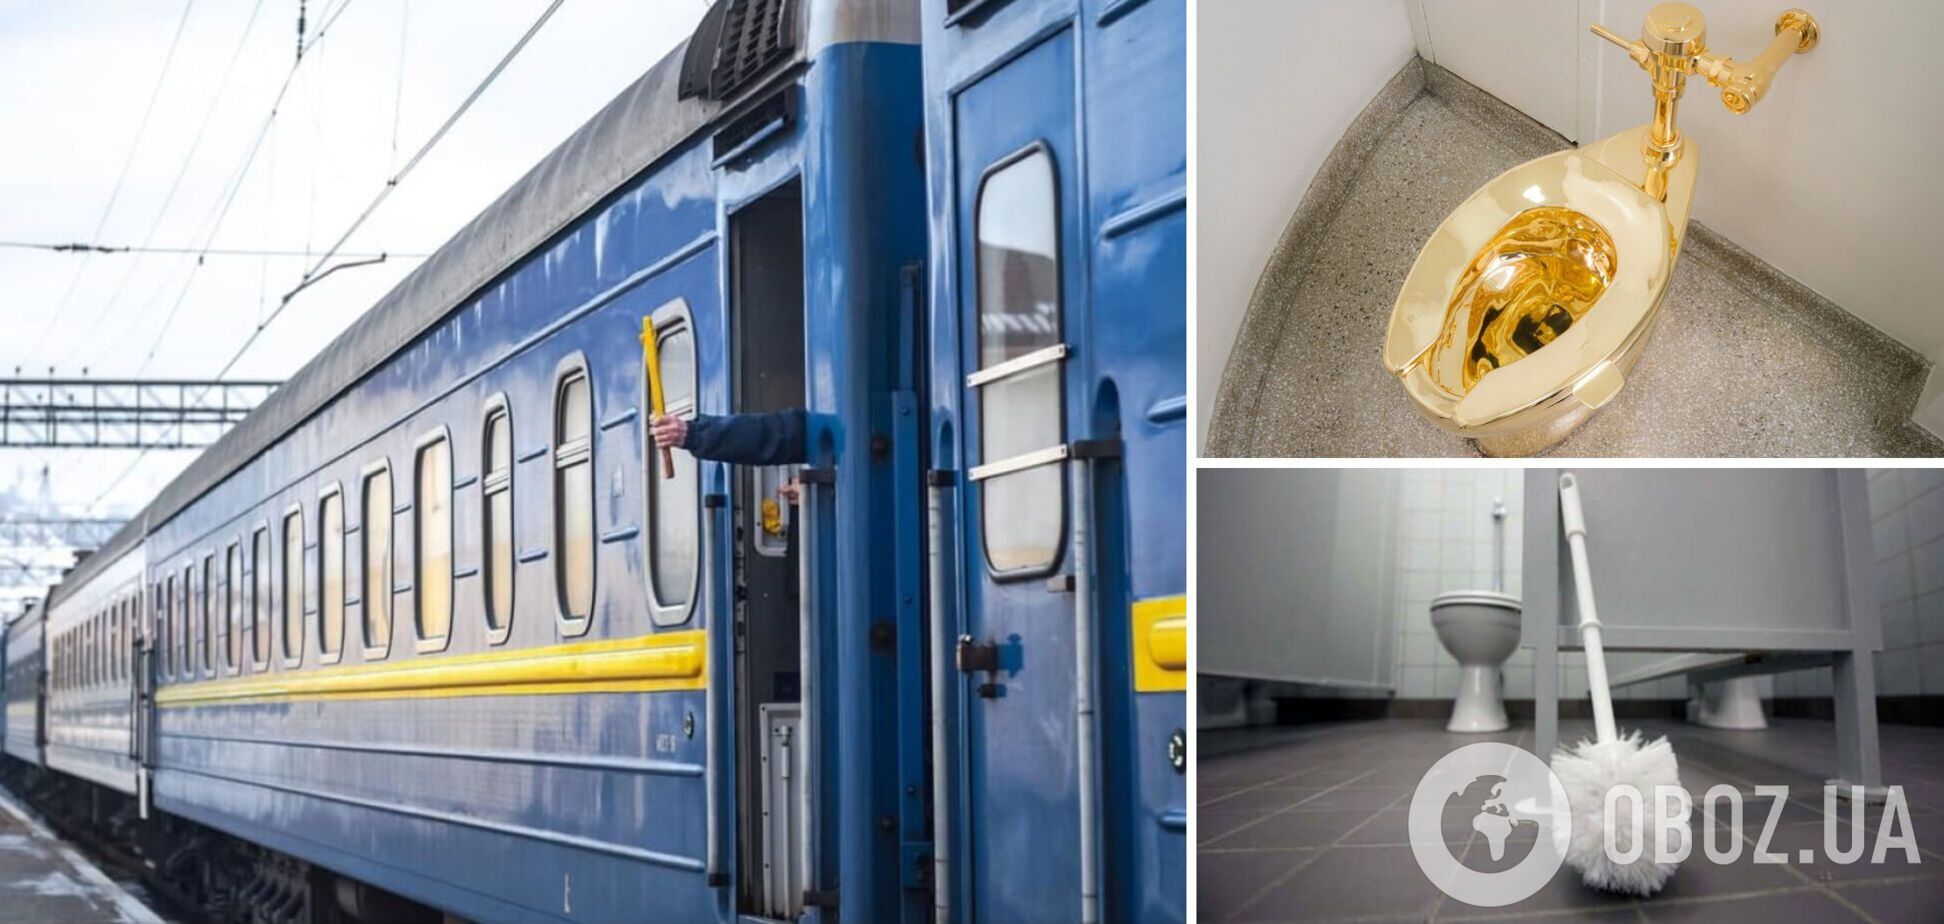 'УЗ' планує закупити для Центрального вокзалу йоржики та біде на майже 1,7 млн грн